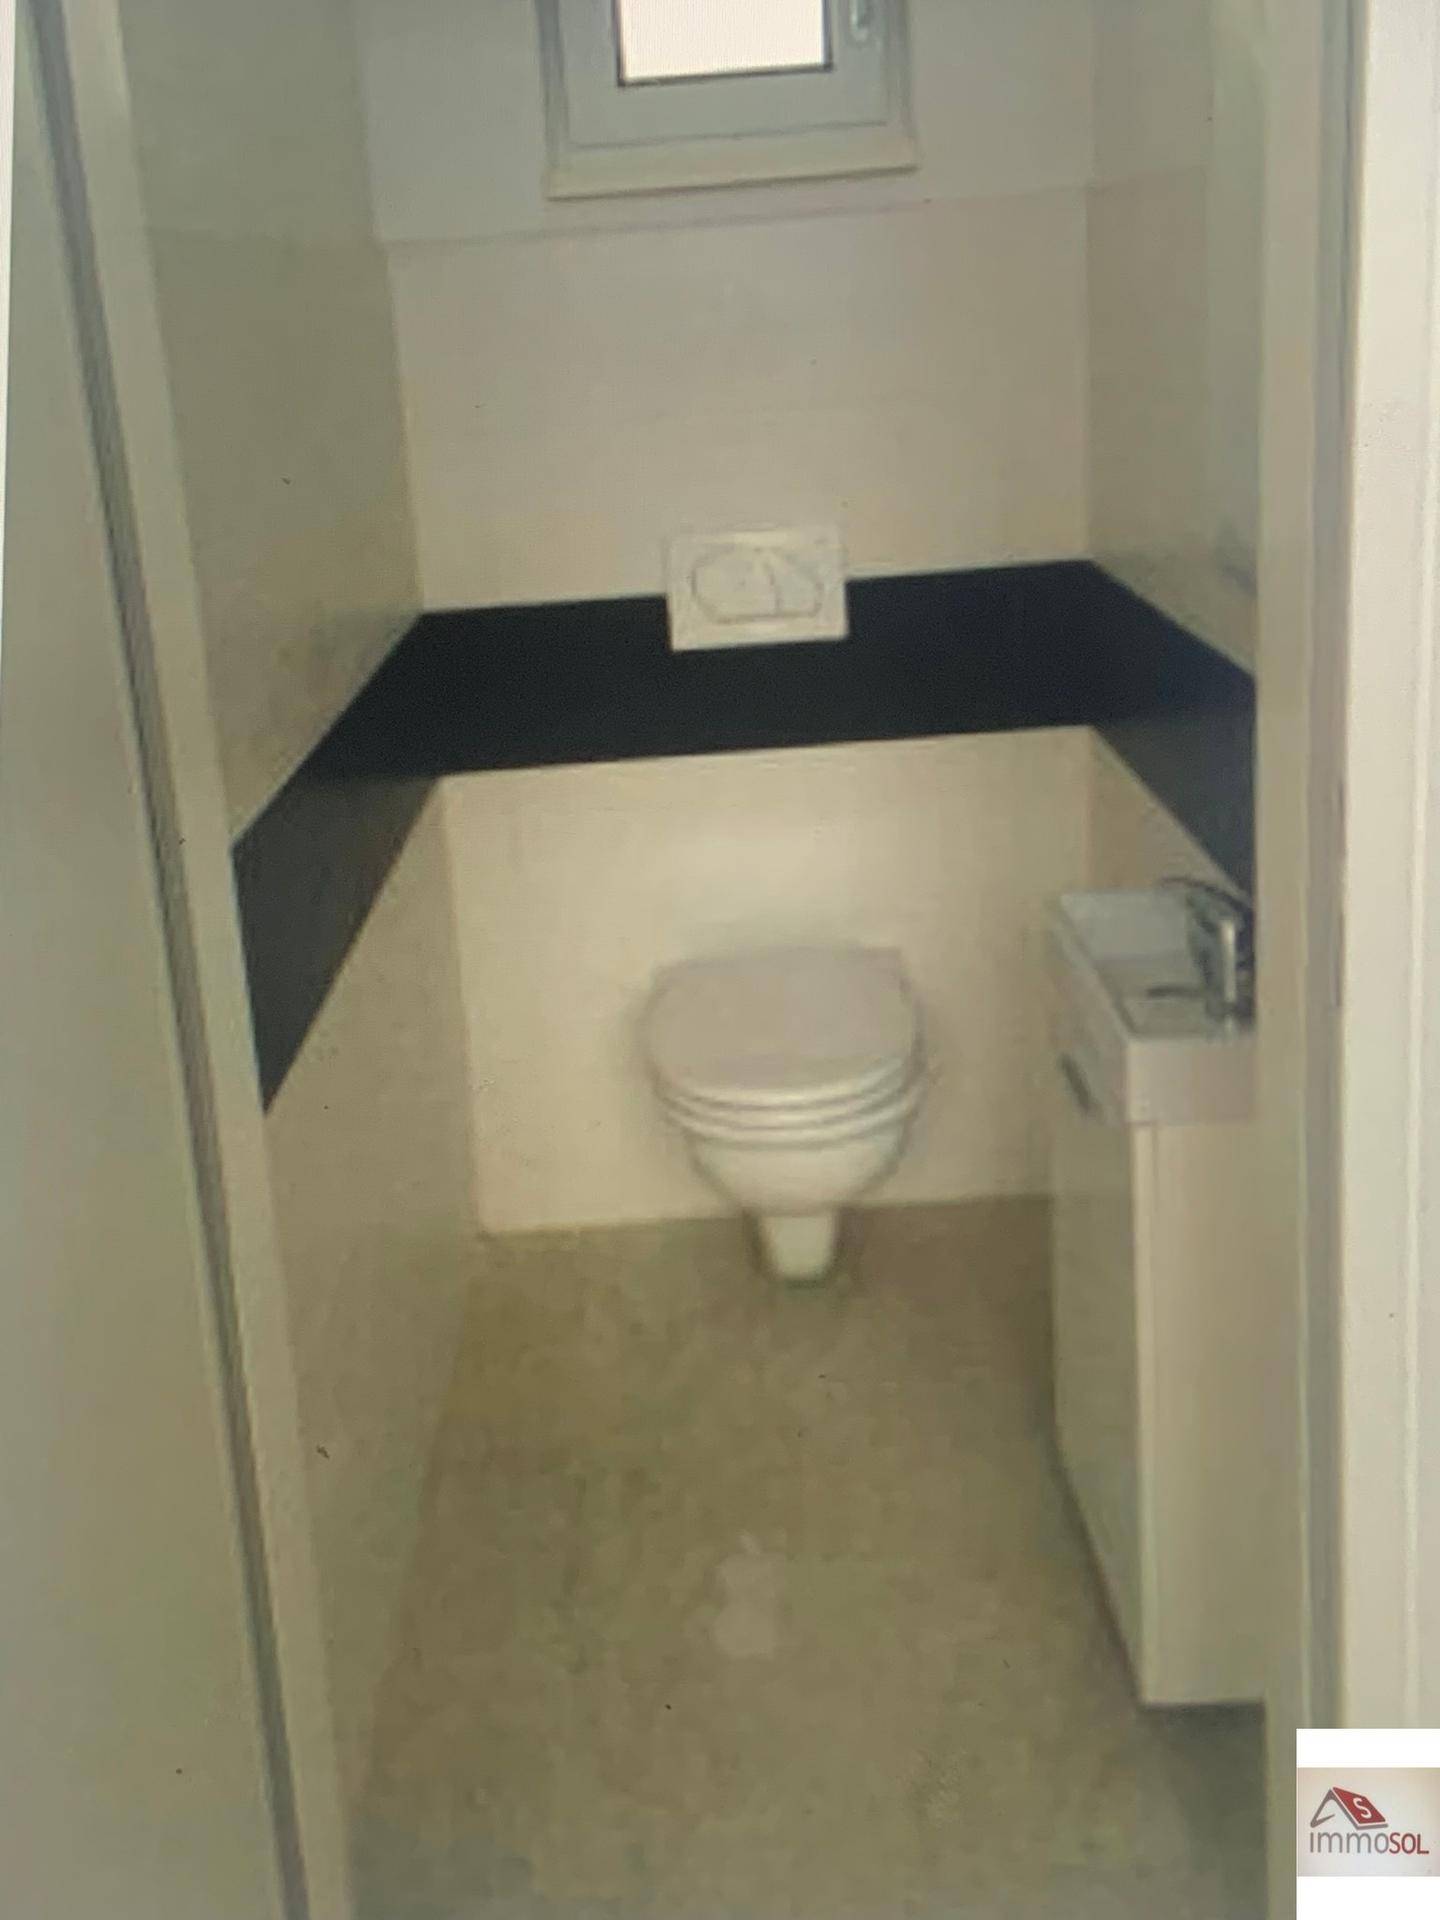 Toilette im Erdgeschoss